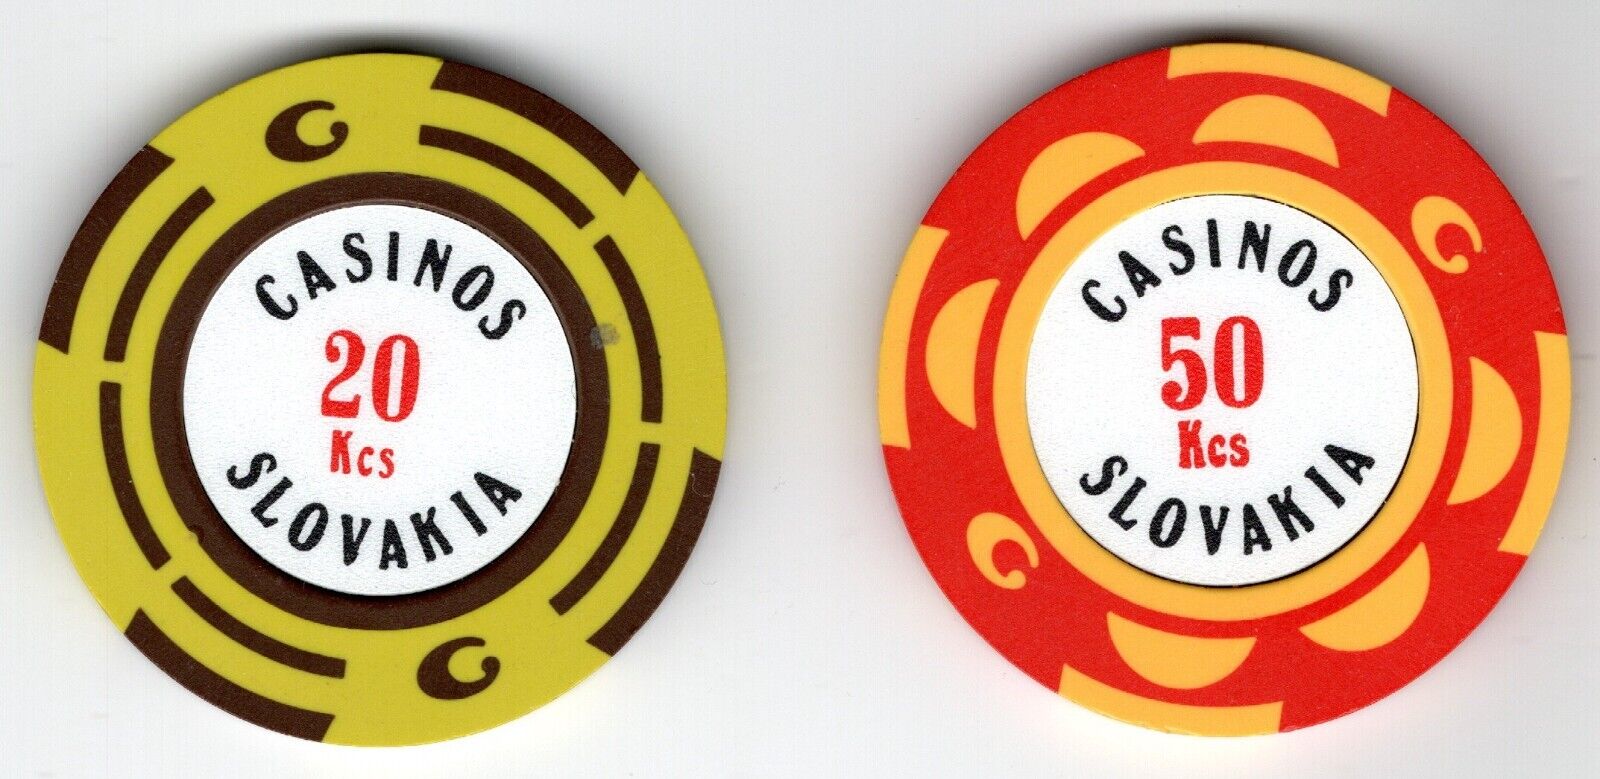 Casinos Slovakia Chips, Bratislava, Slovakia - Lot of 2